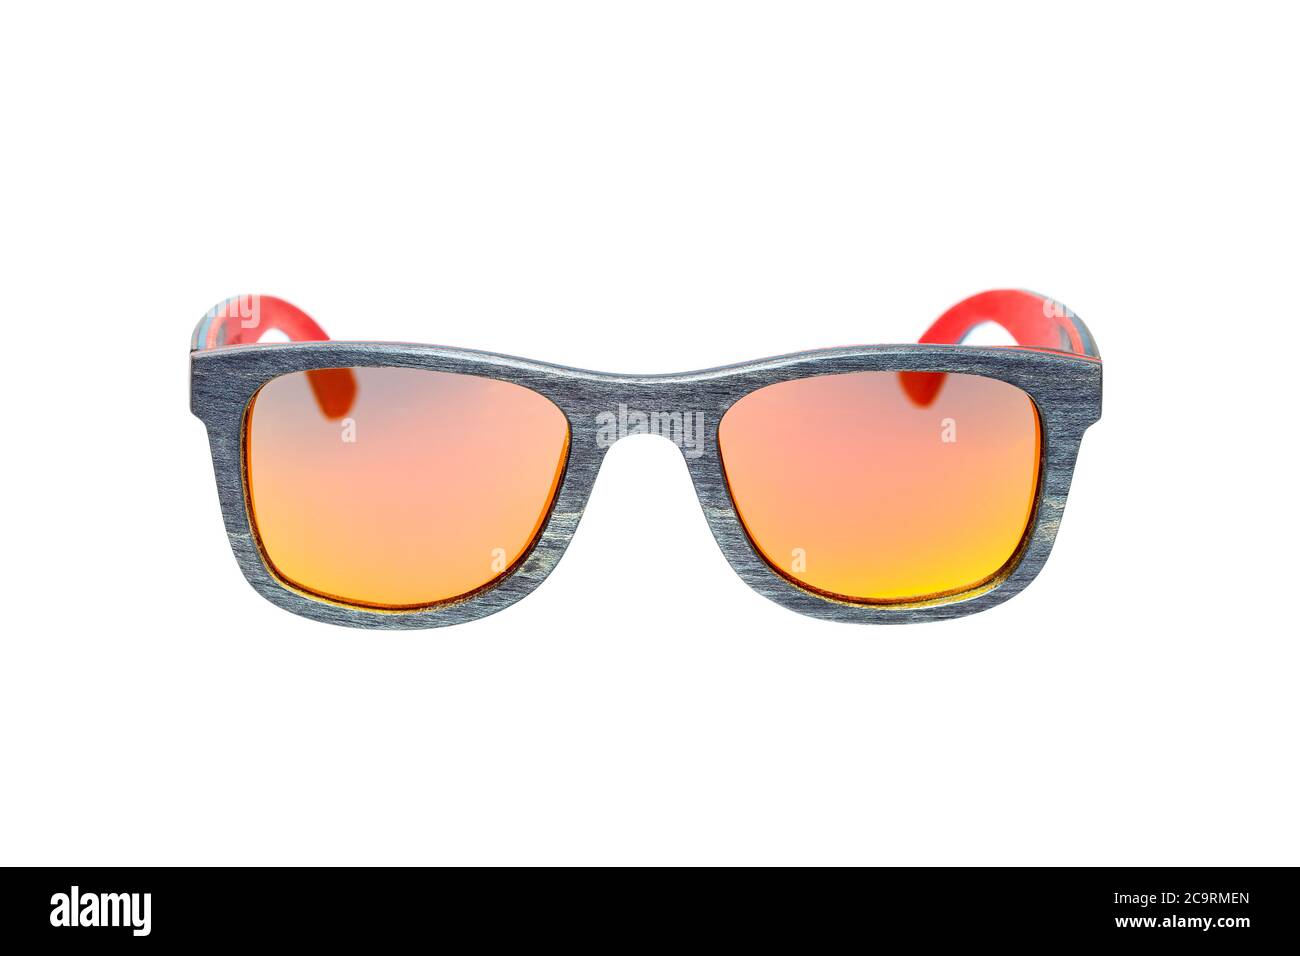 lunettes de soleil carrées de style des années 70 en bois à texture grise  et verres de couleur jaune orange chameleon isolés sur un fond blanc vue du  visage Photo Stock - Alamy